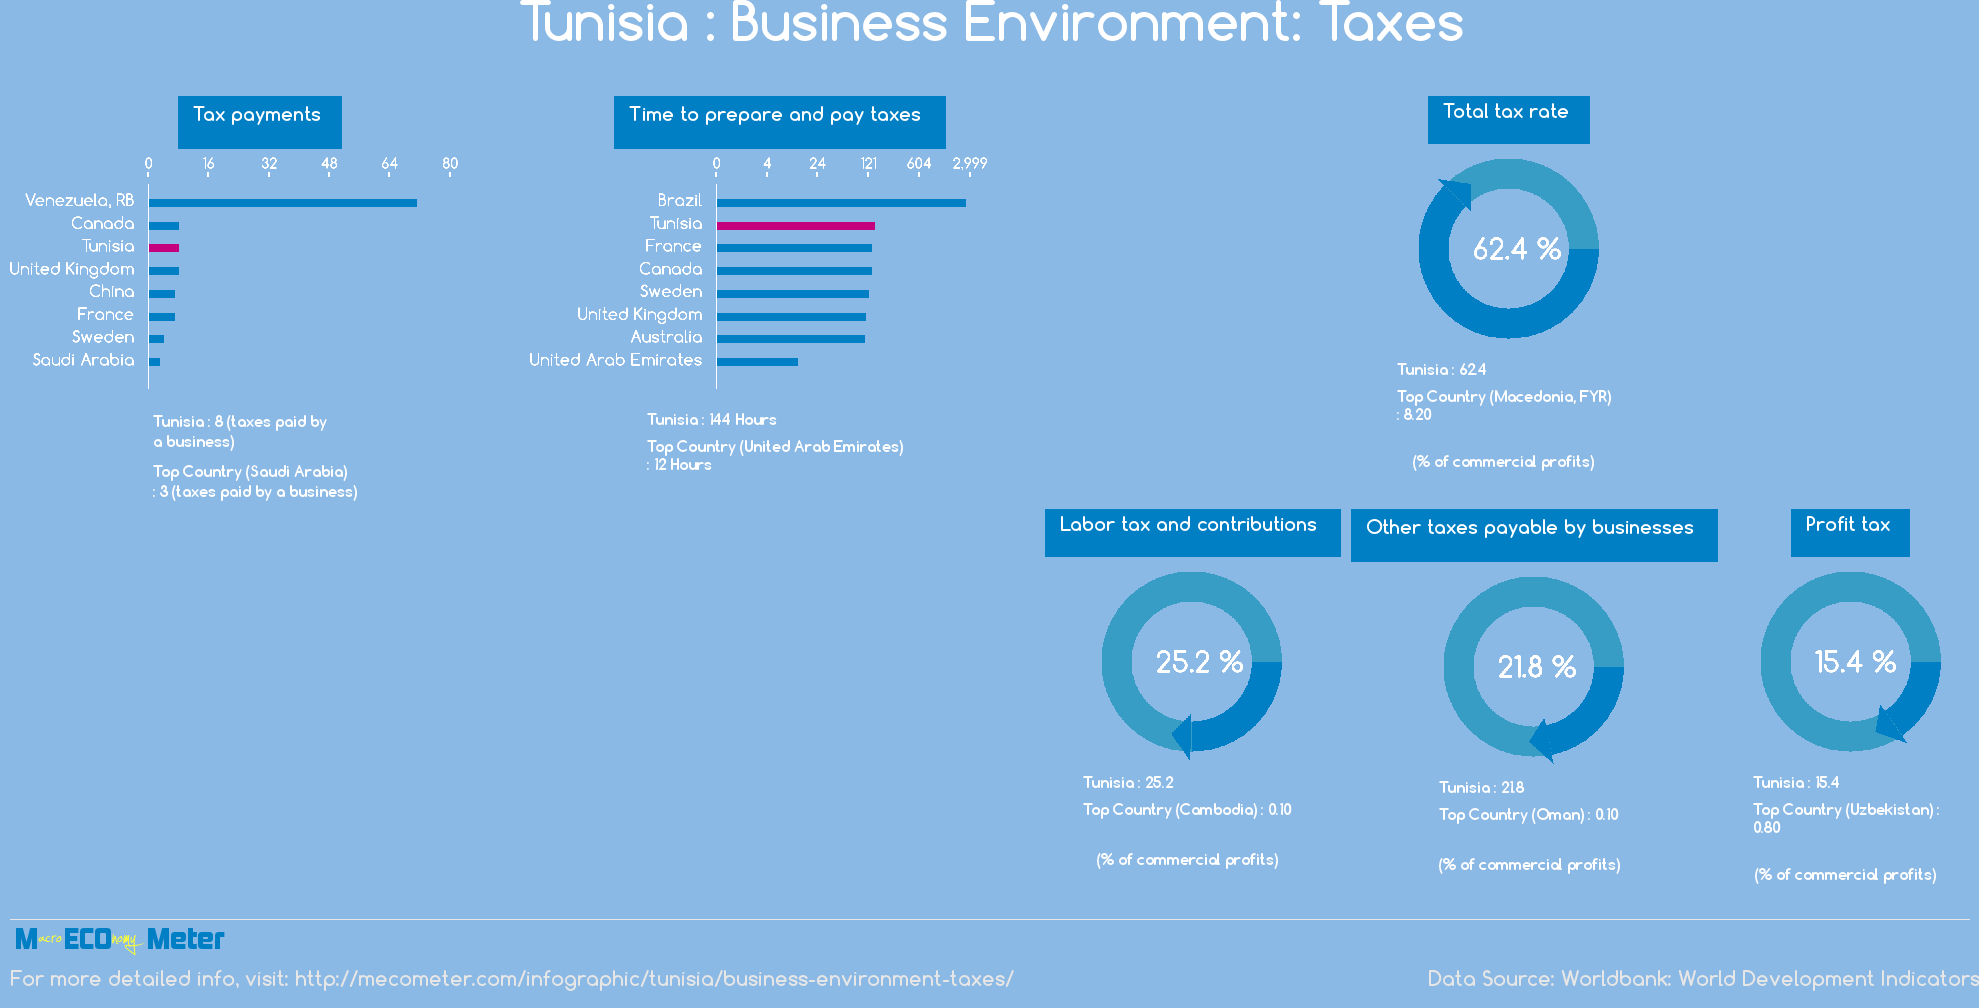 Tunisia : Business Environment: Taxes